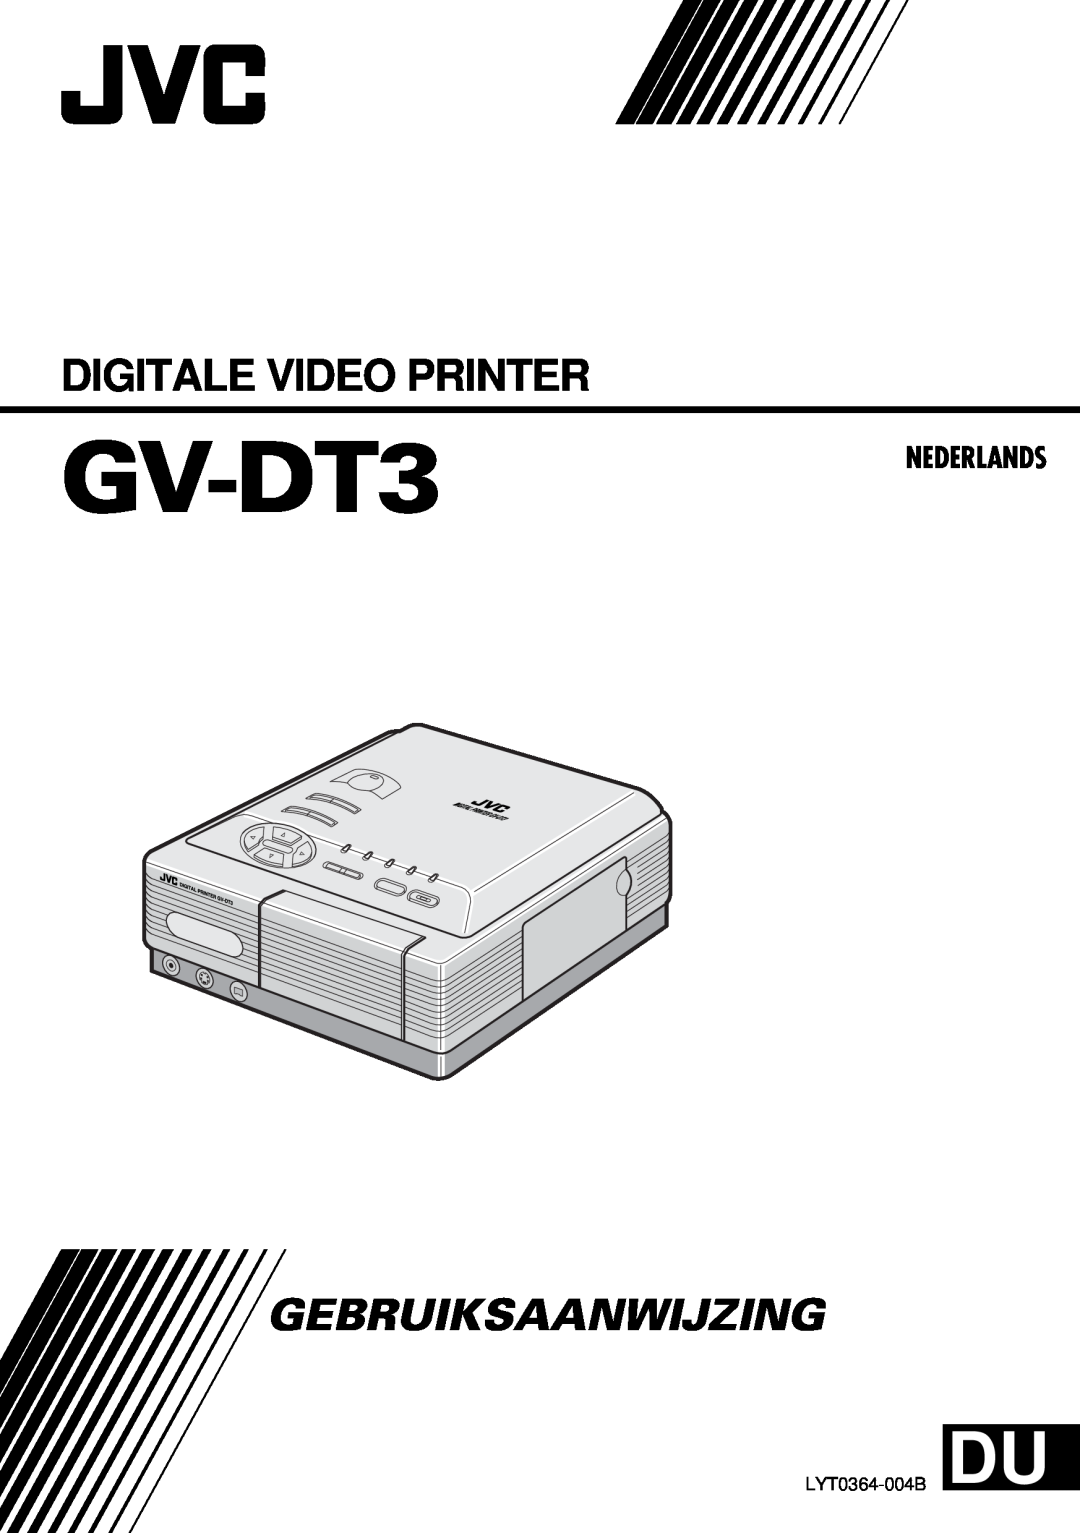 JVC GV-DT3 manual Digitale Video Printer, Gebruiksaanwijzing, Nederlands, LYT0364-004B DU 